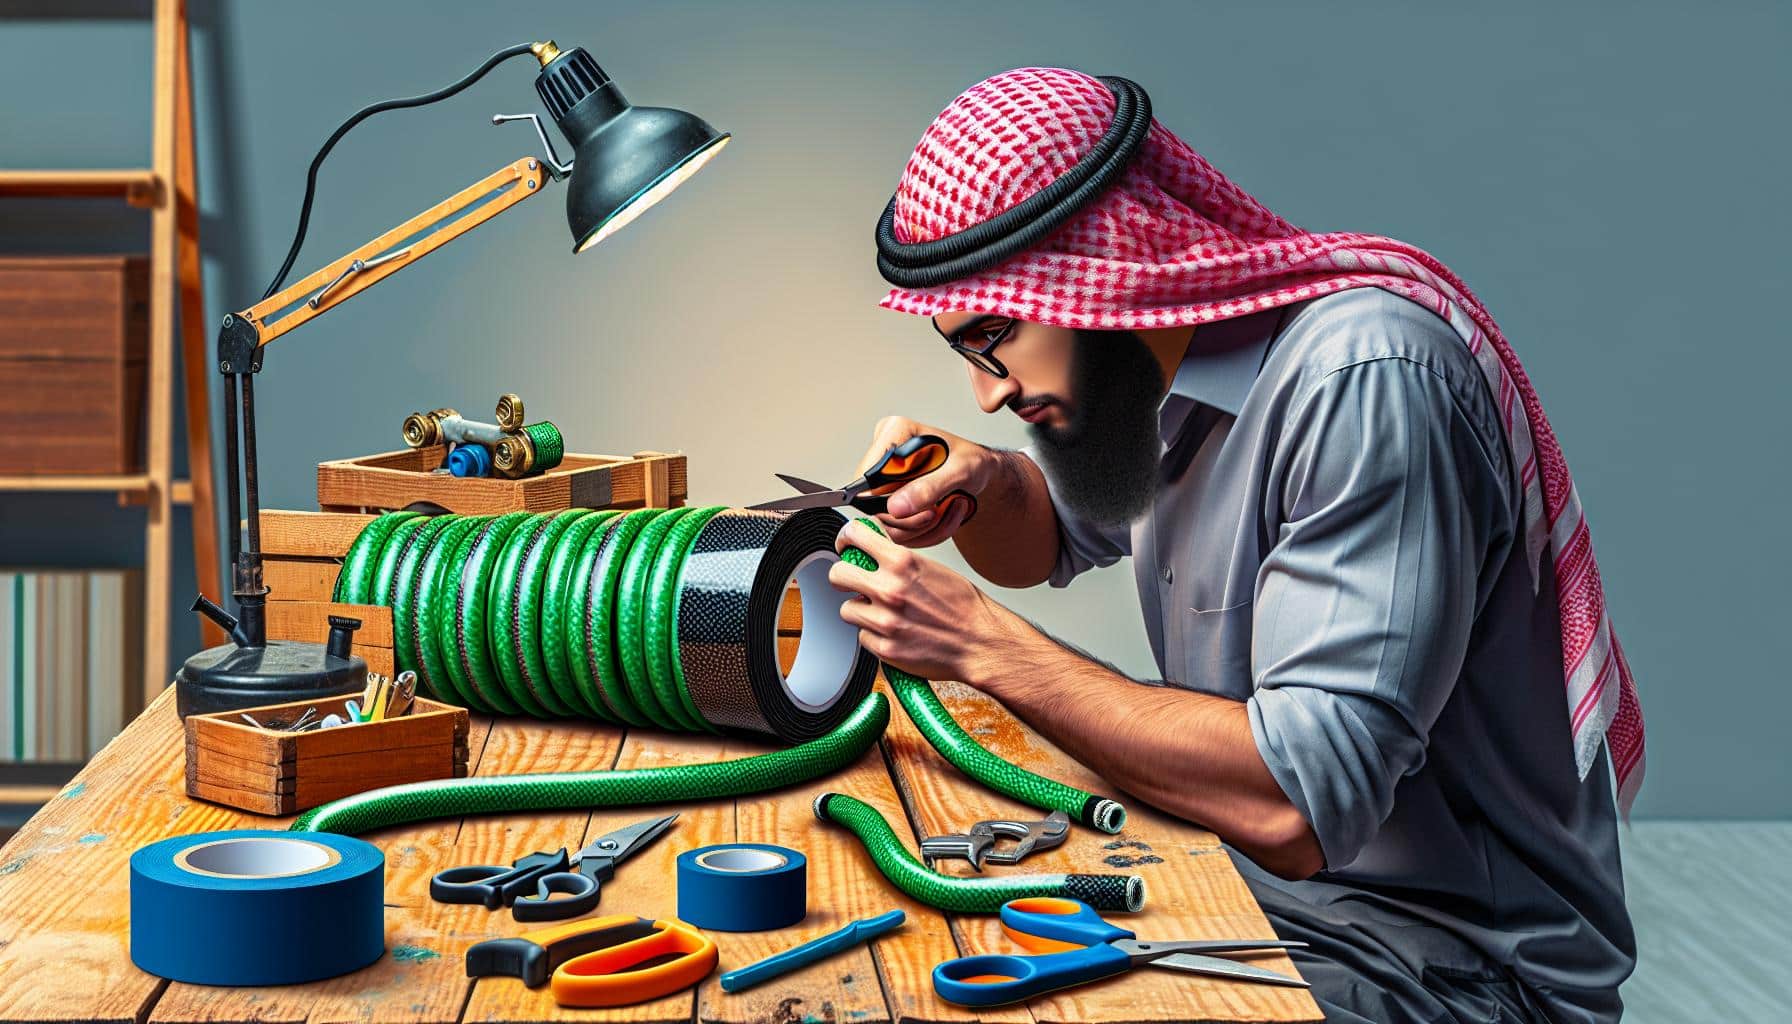 Arab man repairing hose with tools